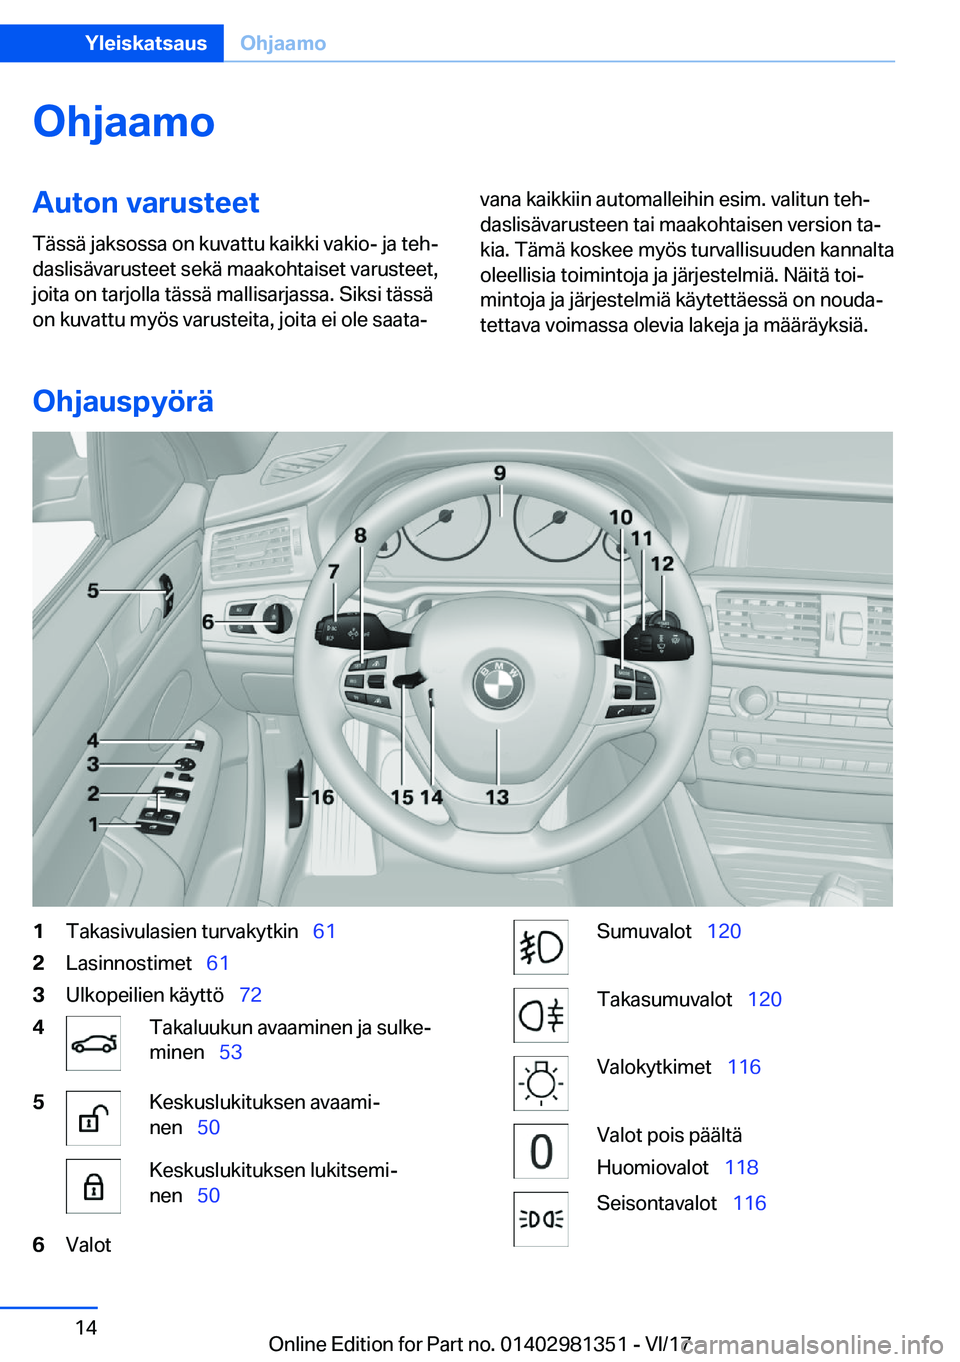 BMW X4 2018  Omistajan Käsikirja (in Finnish) �O�h�j�a�a�m�o�A�u�t�o�n��v�a�r�u�s�t�e�e�t�T�